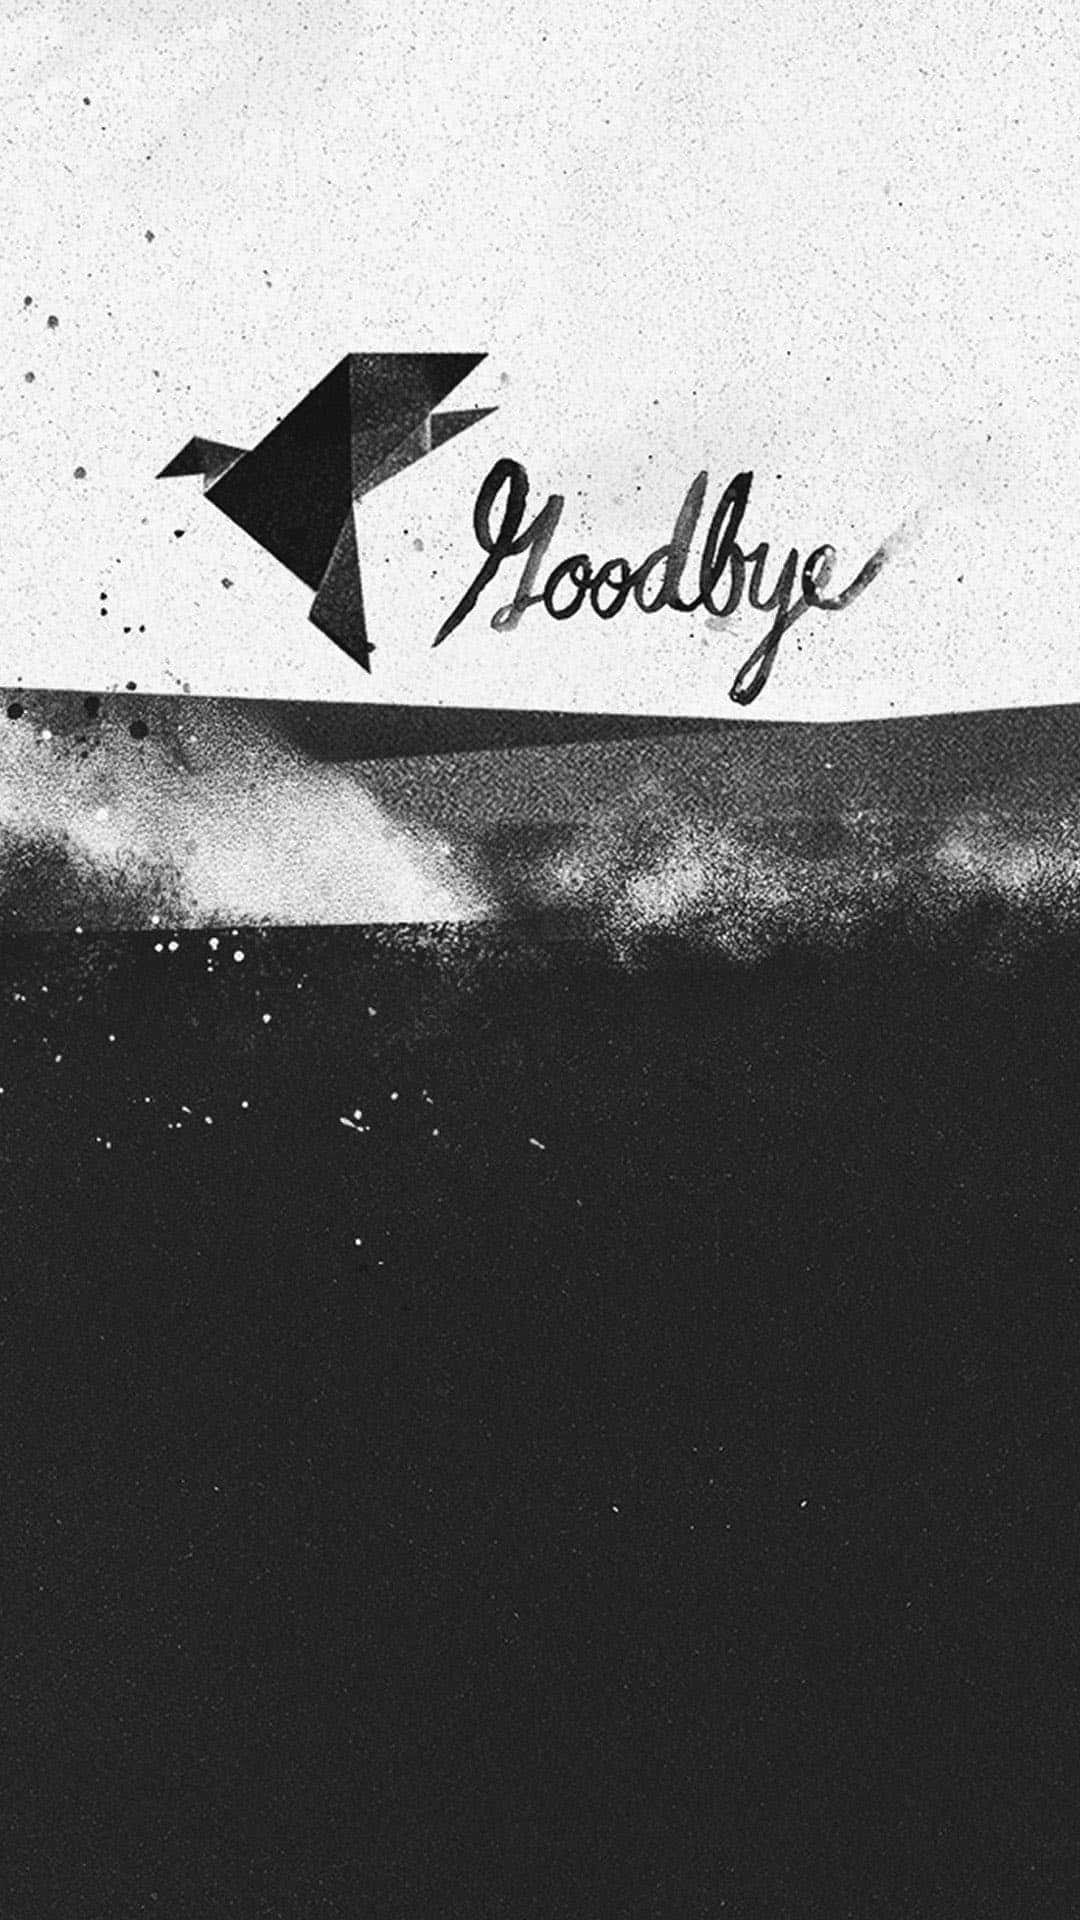 “See you soon - Goodbye.”